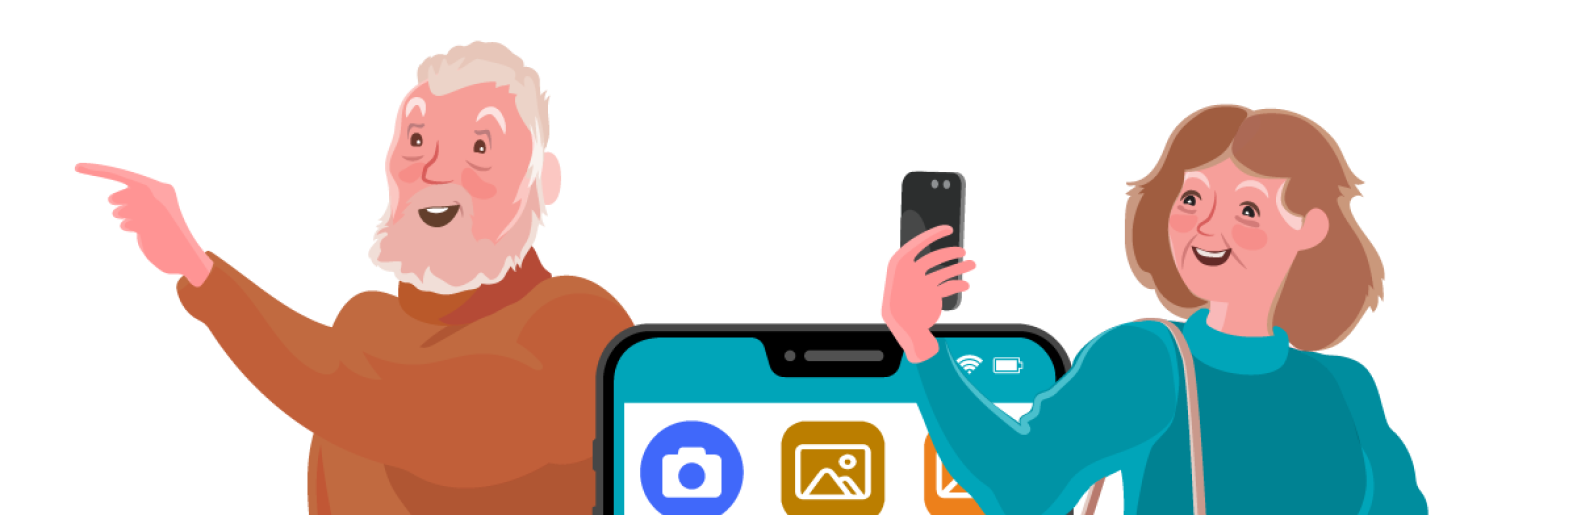 Ilustración decorativa que muestra personas mayores utilizando dispositivos tecnologicos. Una ilustración que busca retratar la digitalización de las personas mayores.